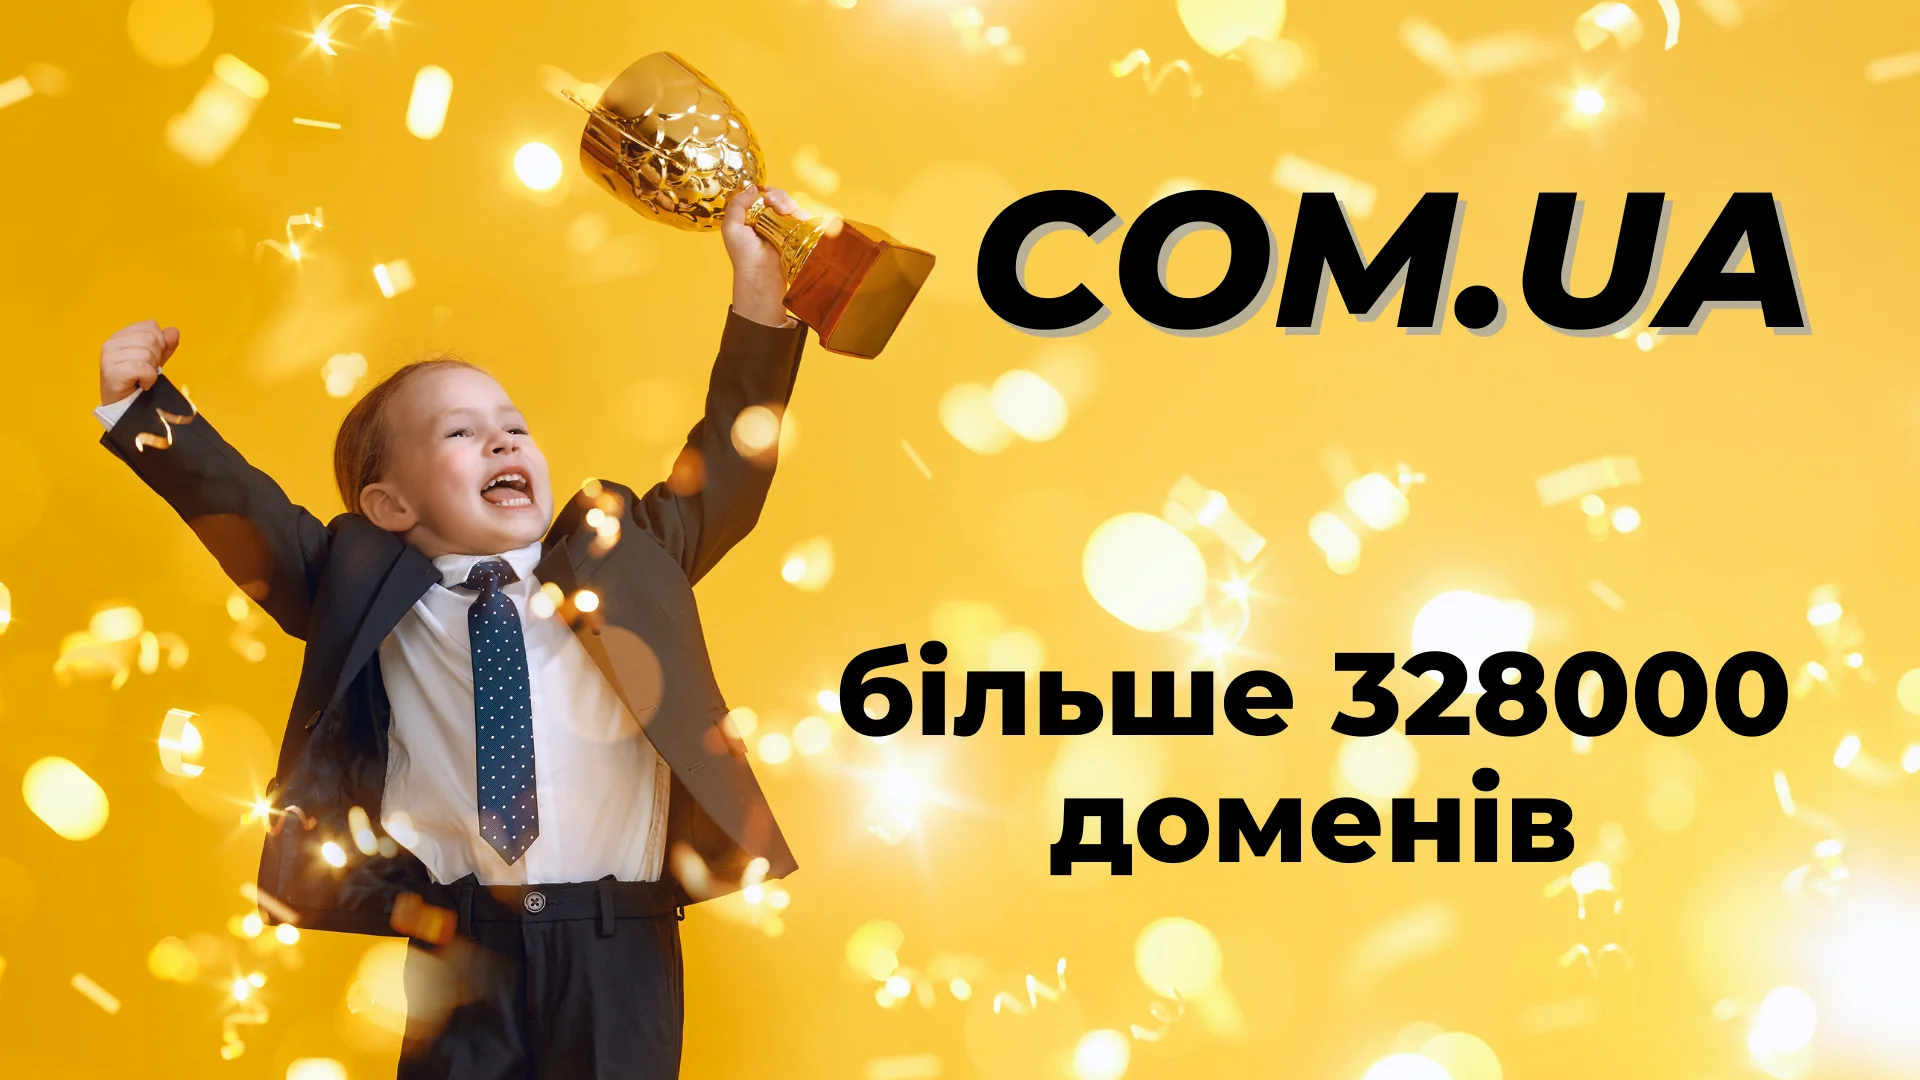 COM.UA - найпопулярніший український домен